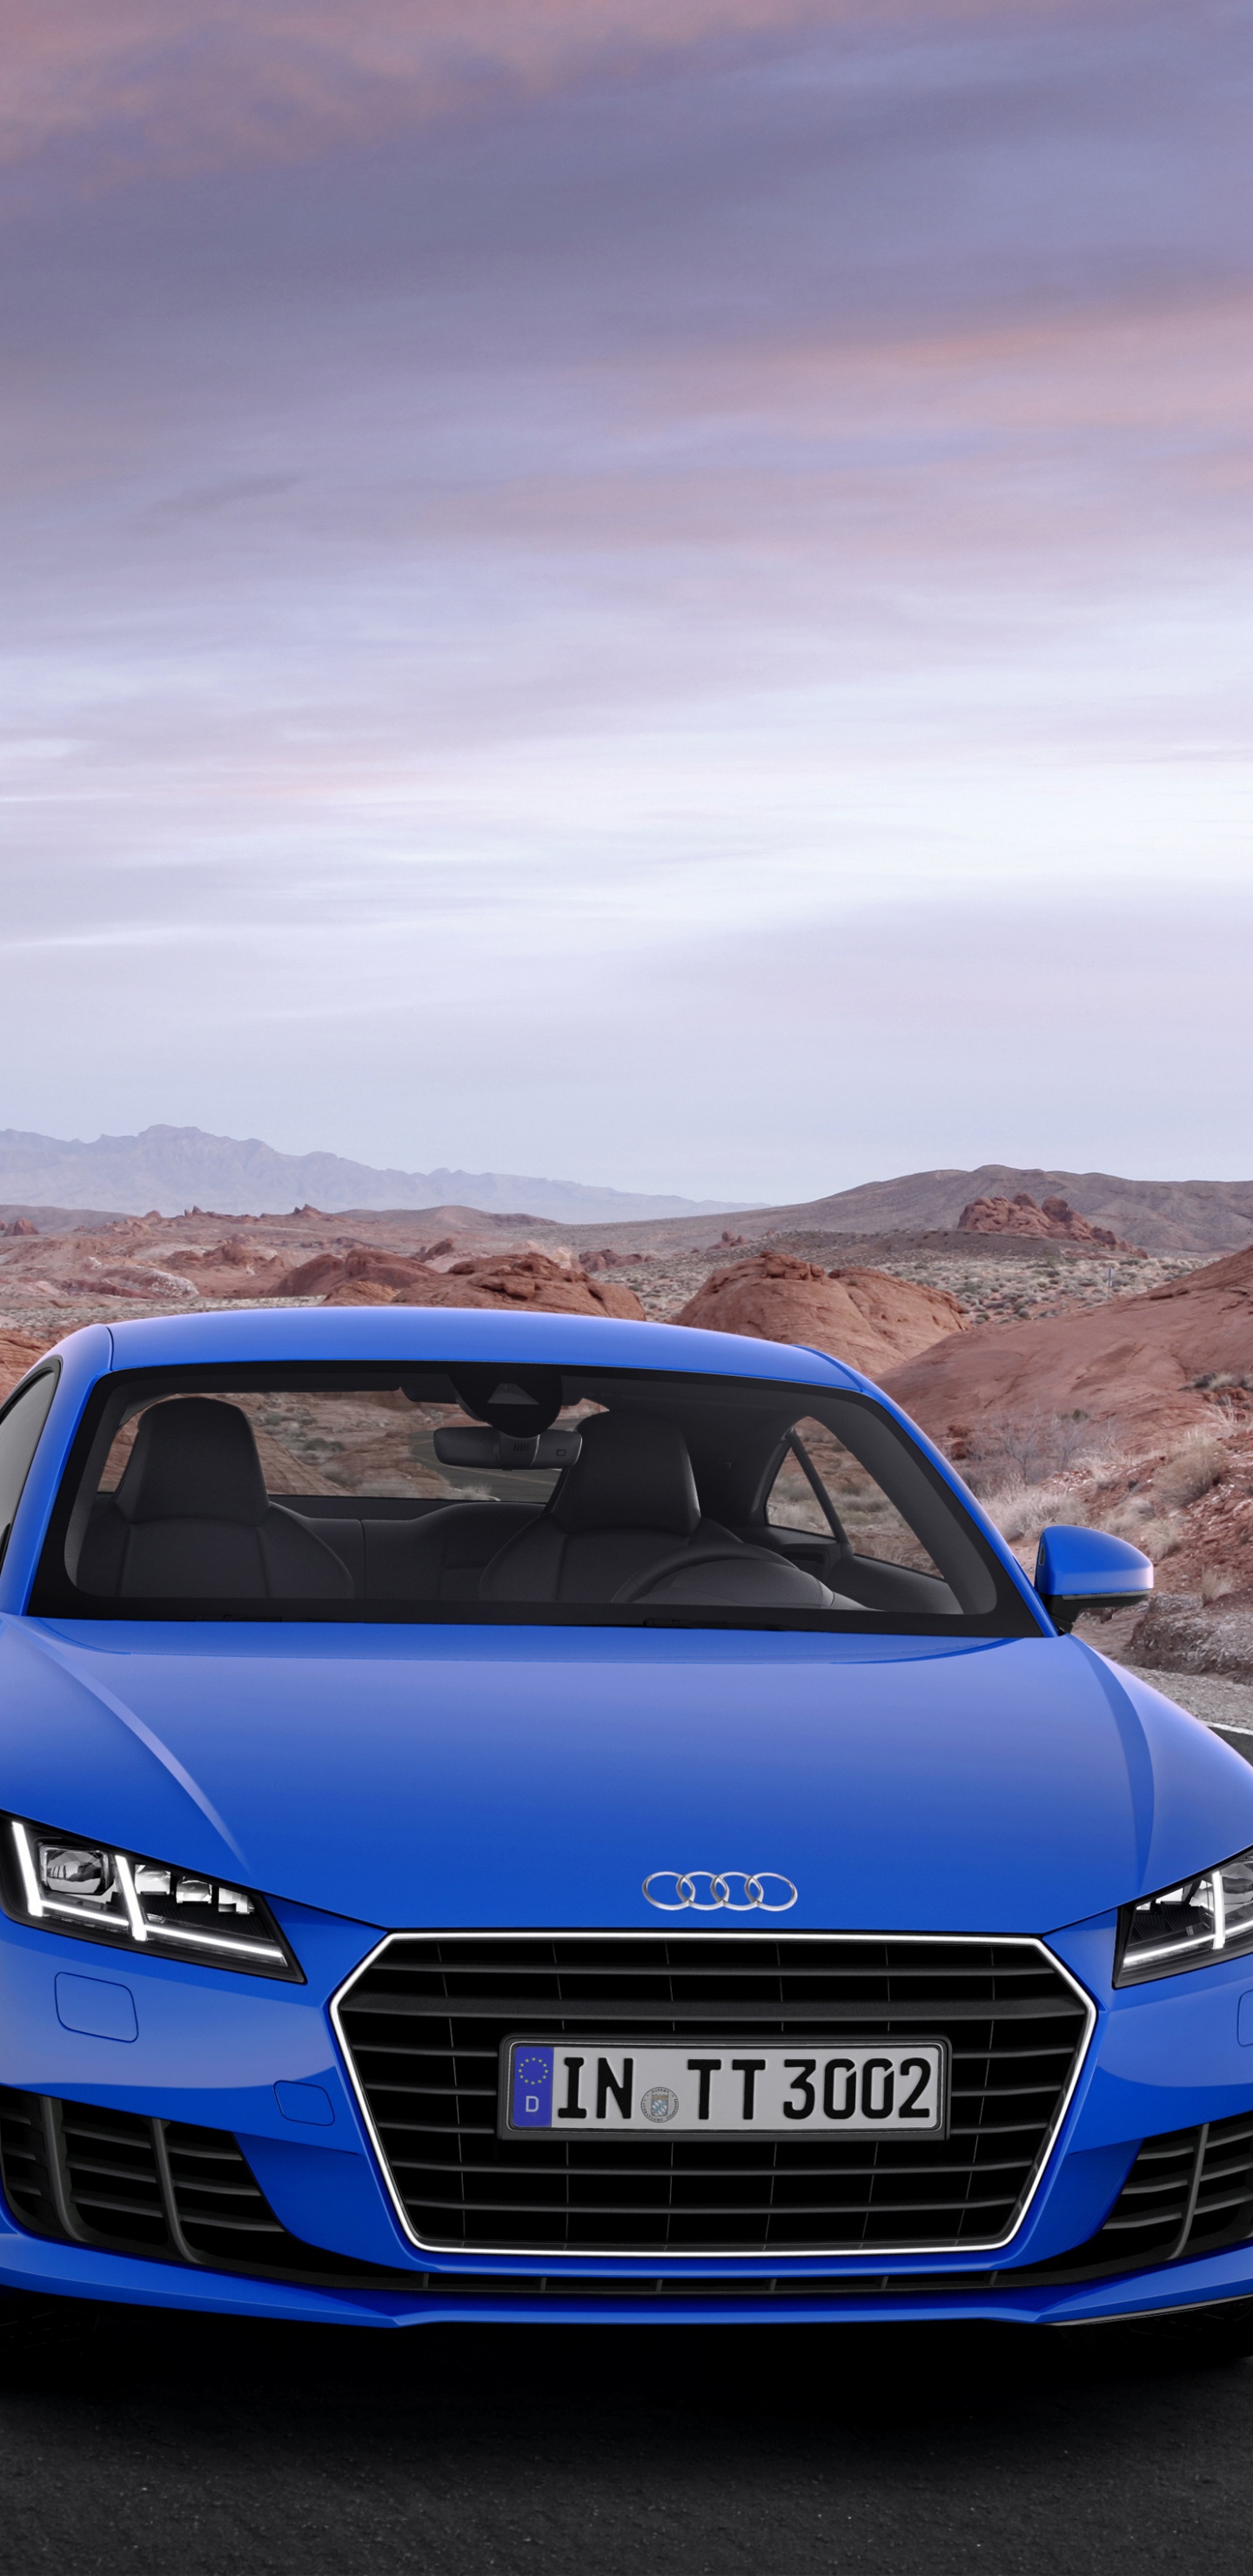 Blauer Audi a 4 Tagsüber Unterwegs. Wallpaper in 1440x2960 Resolution